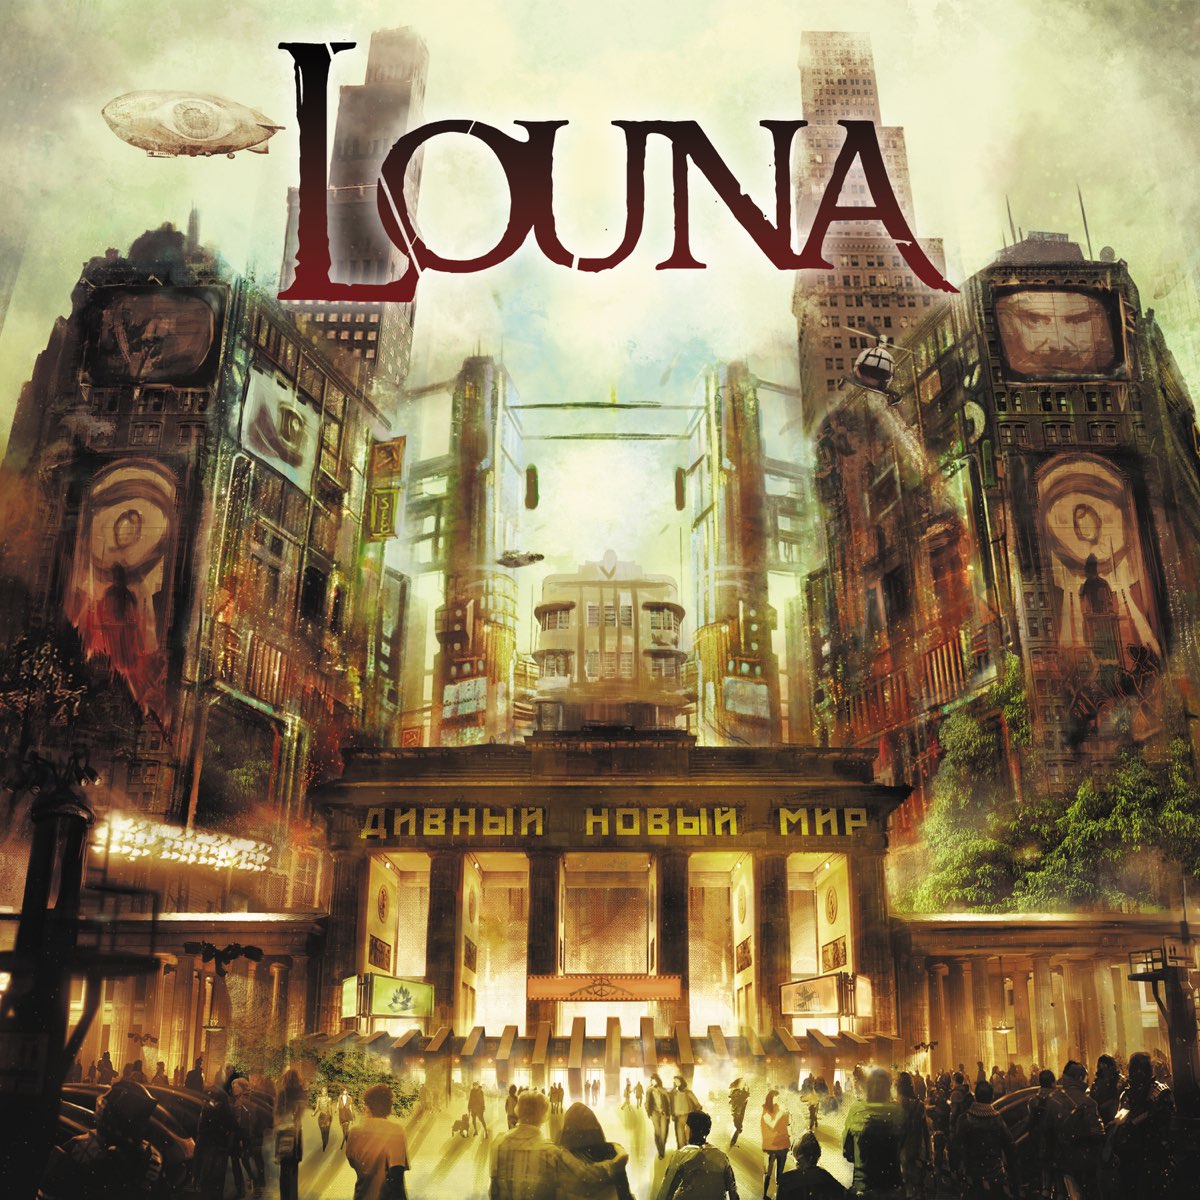 Дивный мир 2. Louna дивный новый мир. Louna дивный новый мир альбом. Louna дивный новый мир обложка альбома. Louna - дивный новый мир (2016).